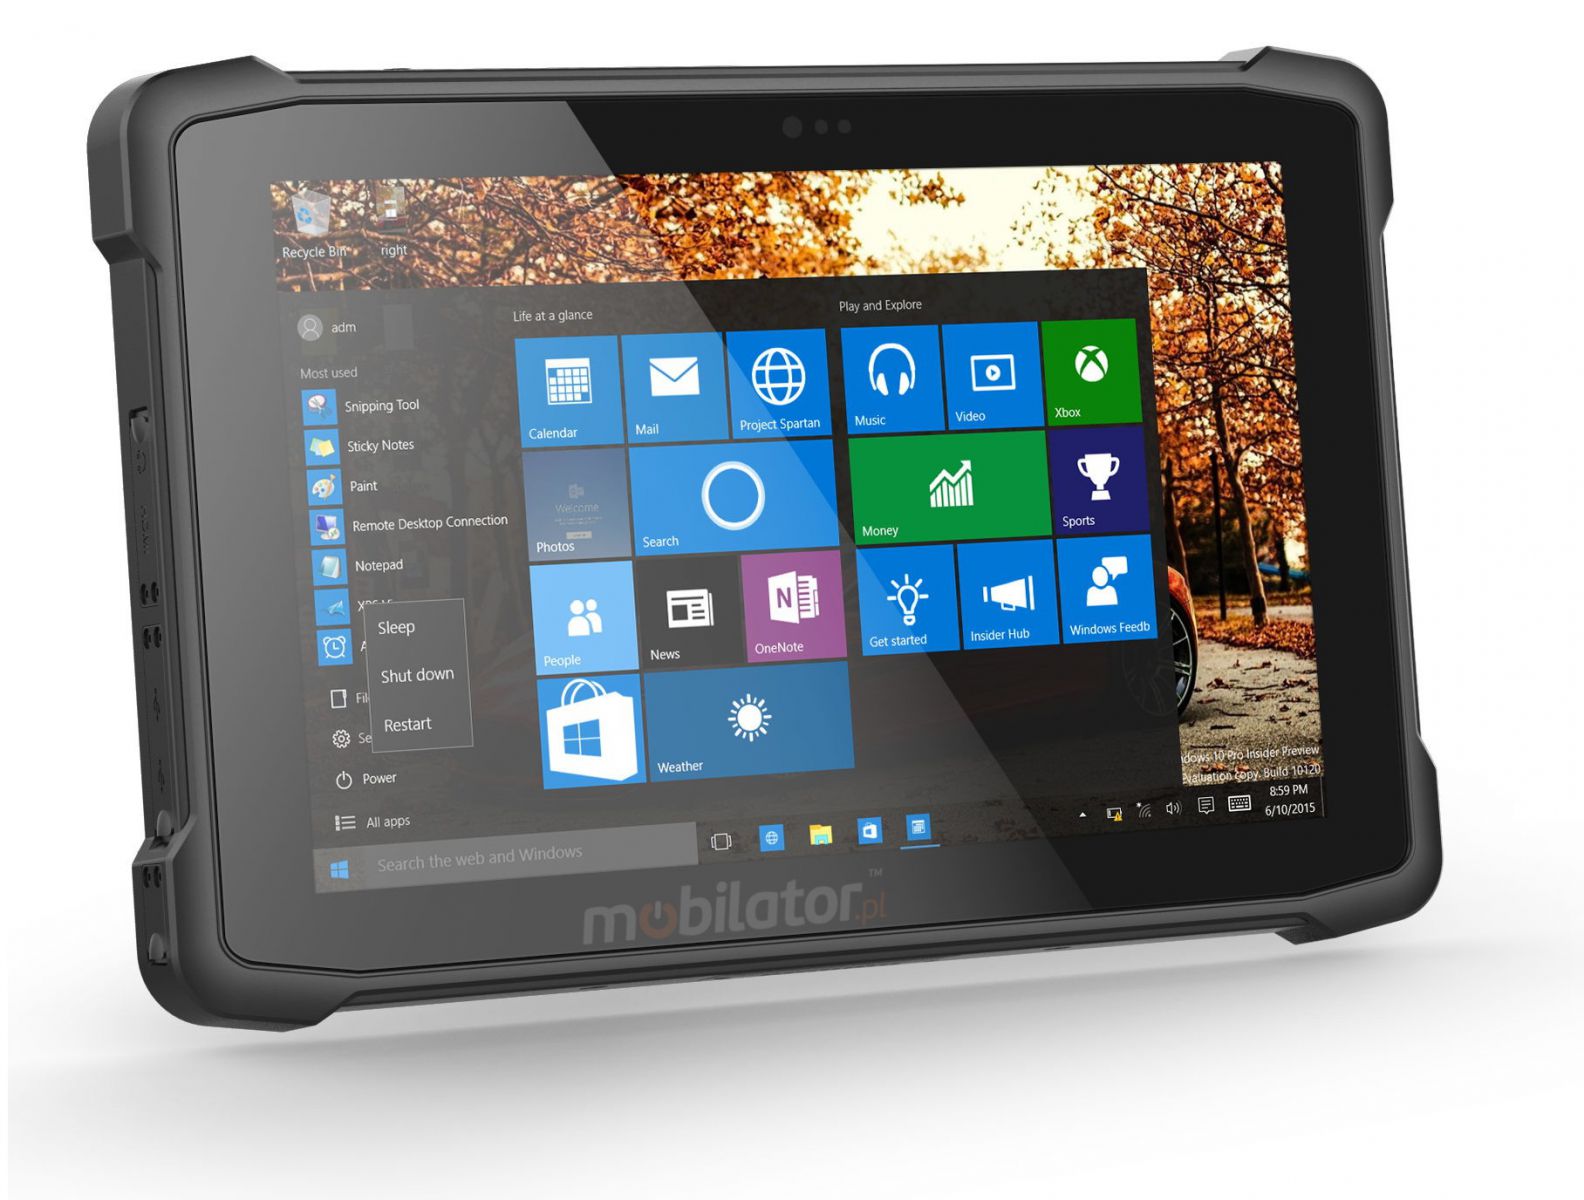 Emdoor I11H v.9 - Odporny na upadki 10 tablet z Windows 10 IoT, Bluetooth 4.2, czytnikiem kodw 2D N3680 Honeywell, NFC , 4G, pamici 4GB RAM i 64GB ROM